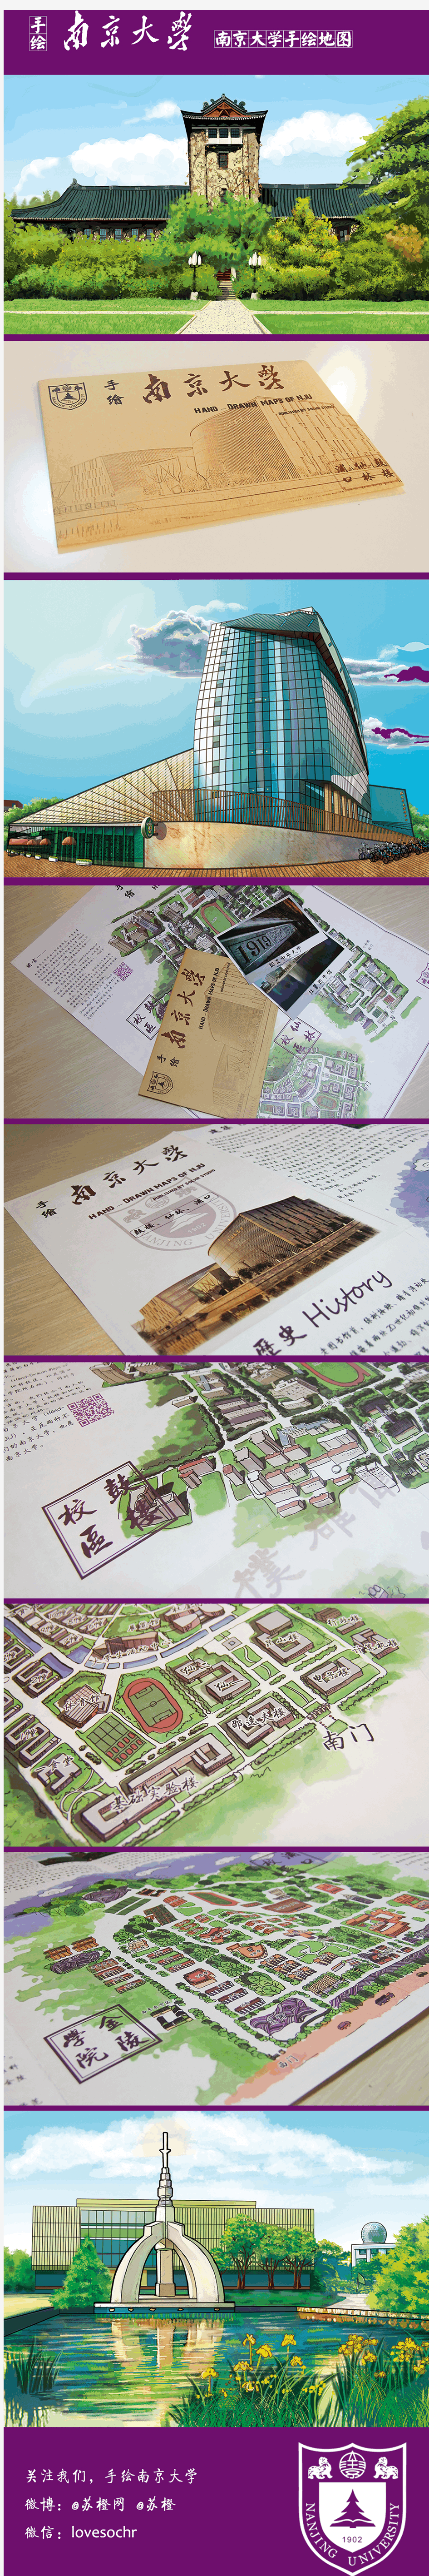 手绘南京大学 手绘南大 手绘地图